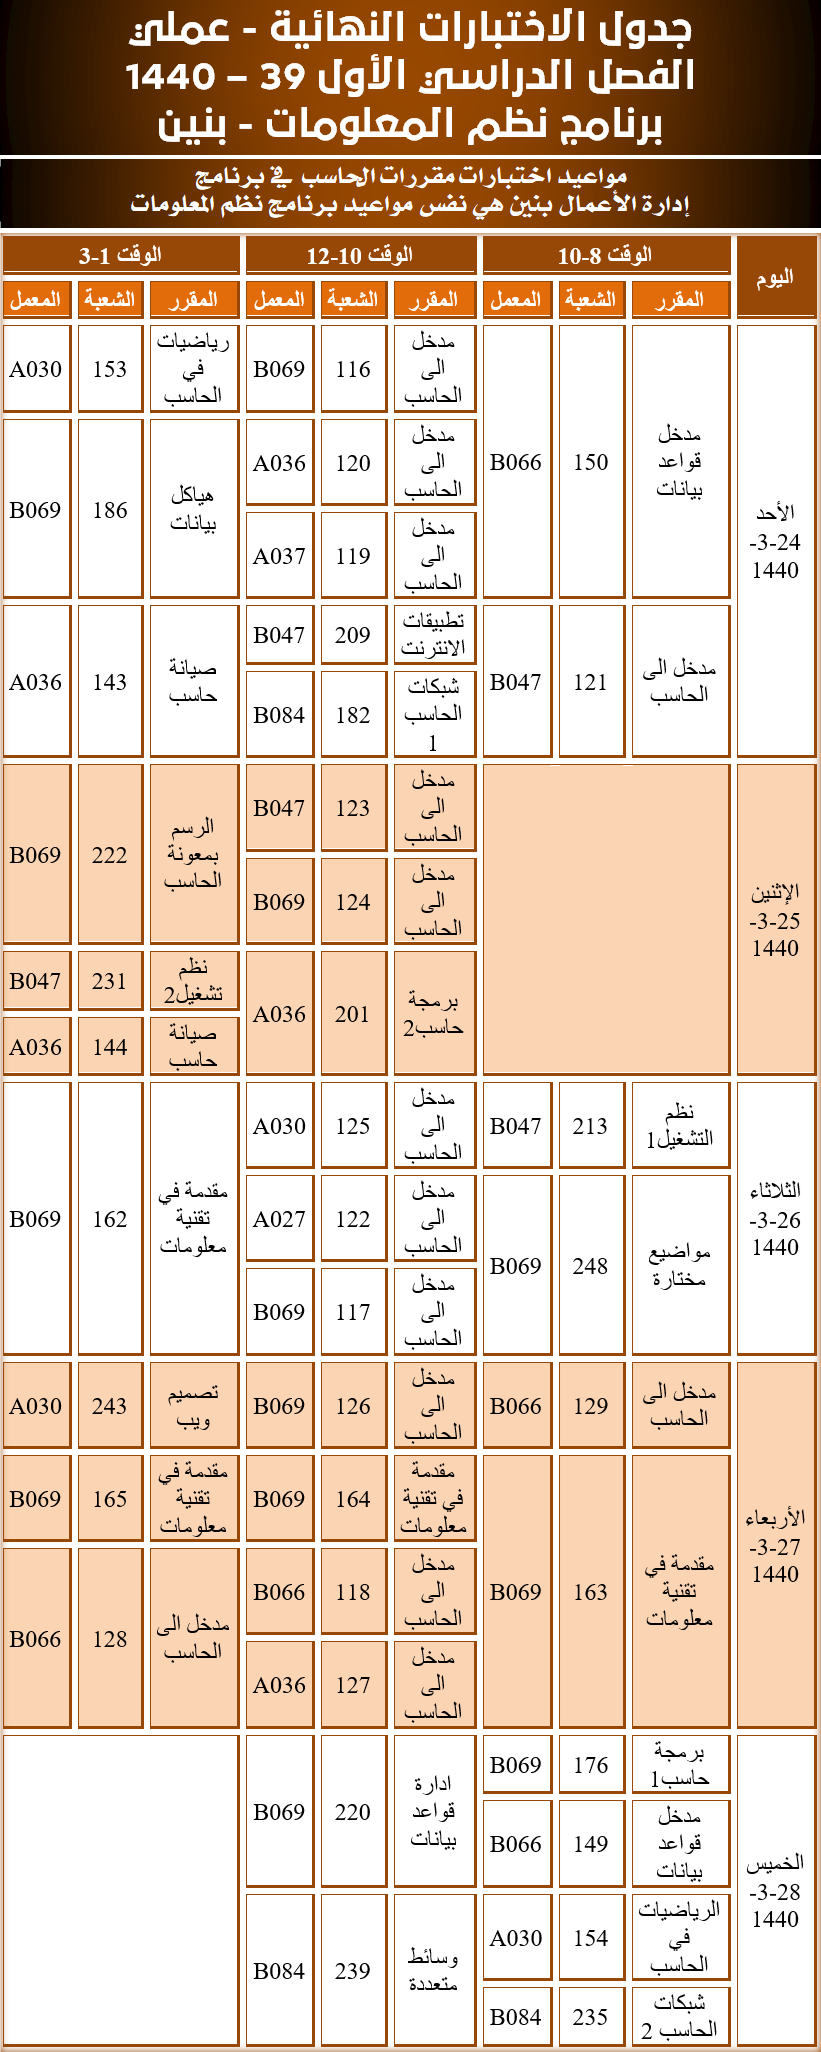  جدول الاختبارات النهائية عملي - نظم المعلومات - الفصل الدراسي الأول 39 - 1440